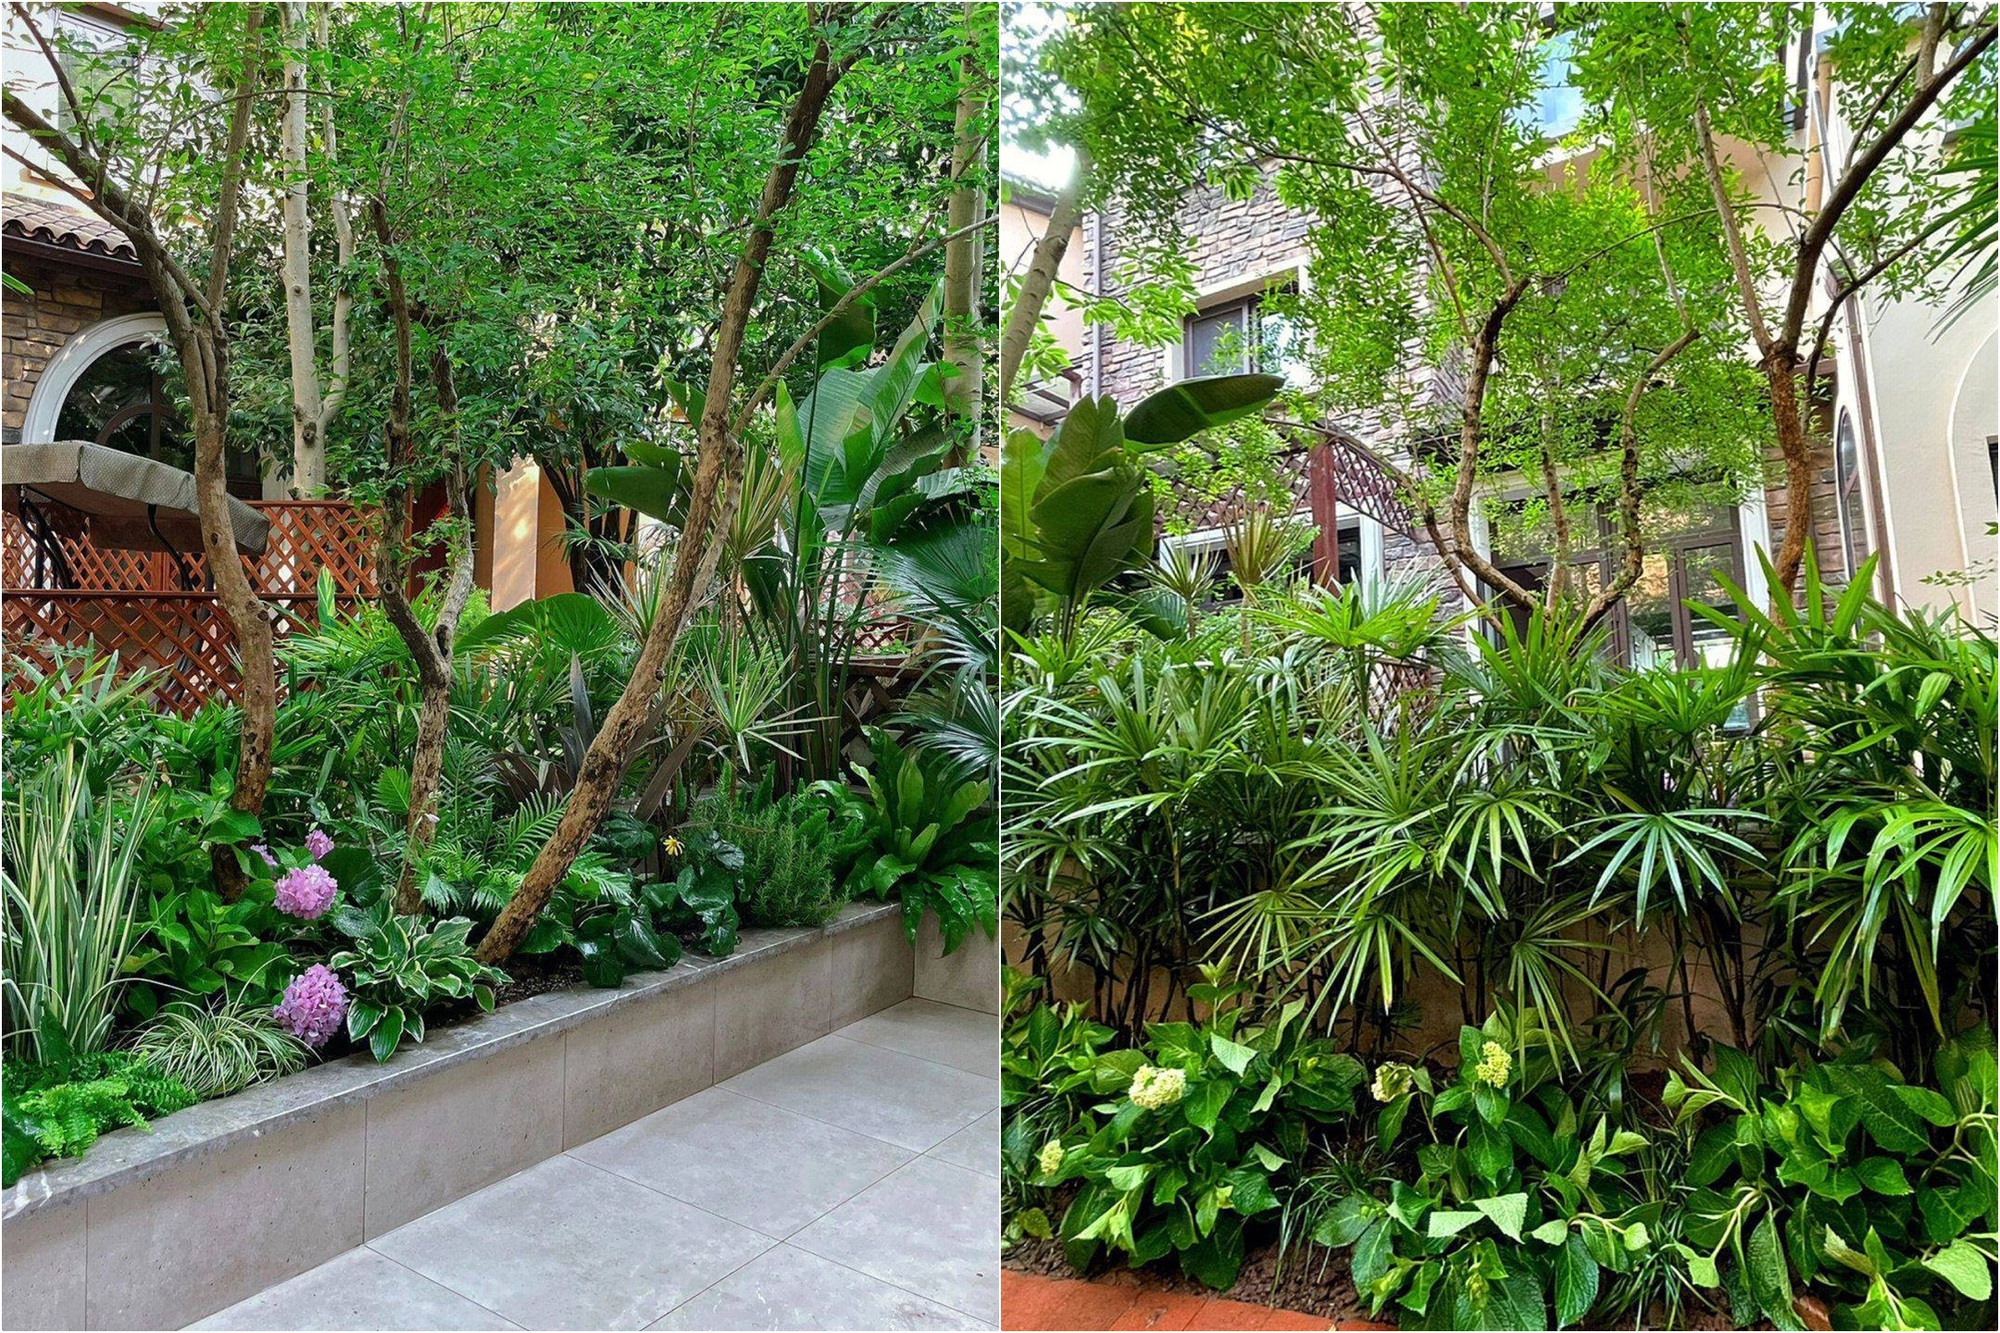 Mẹ đảm tự tay cải tạo khu vườn nhà trở nên xanh mát với chi phí siêu tiết kiệm - Ảnh 4.